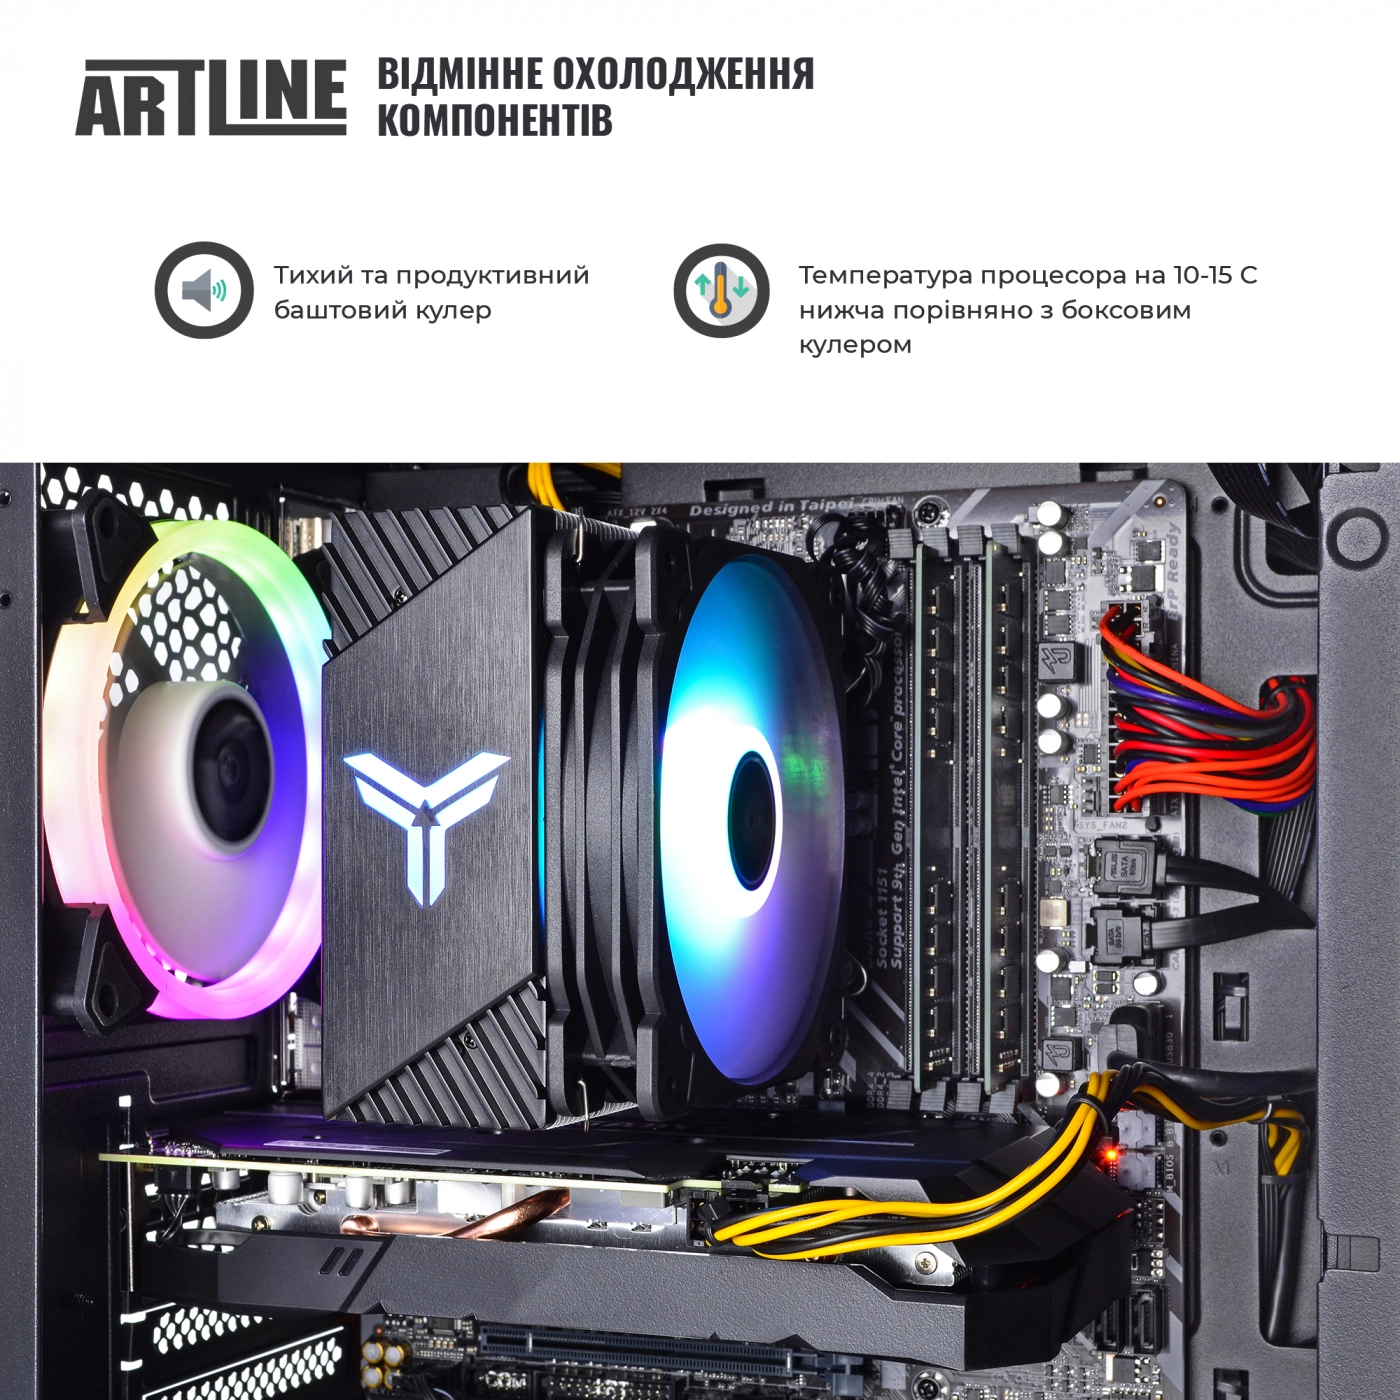 Купить Компьютер ARTLINE Gaming X71v56 - фото 4